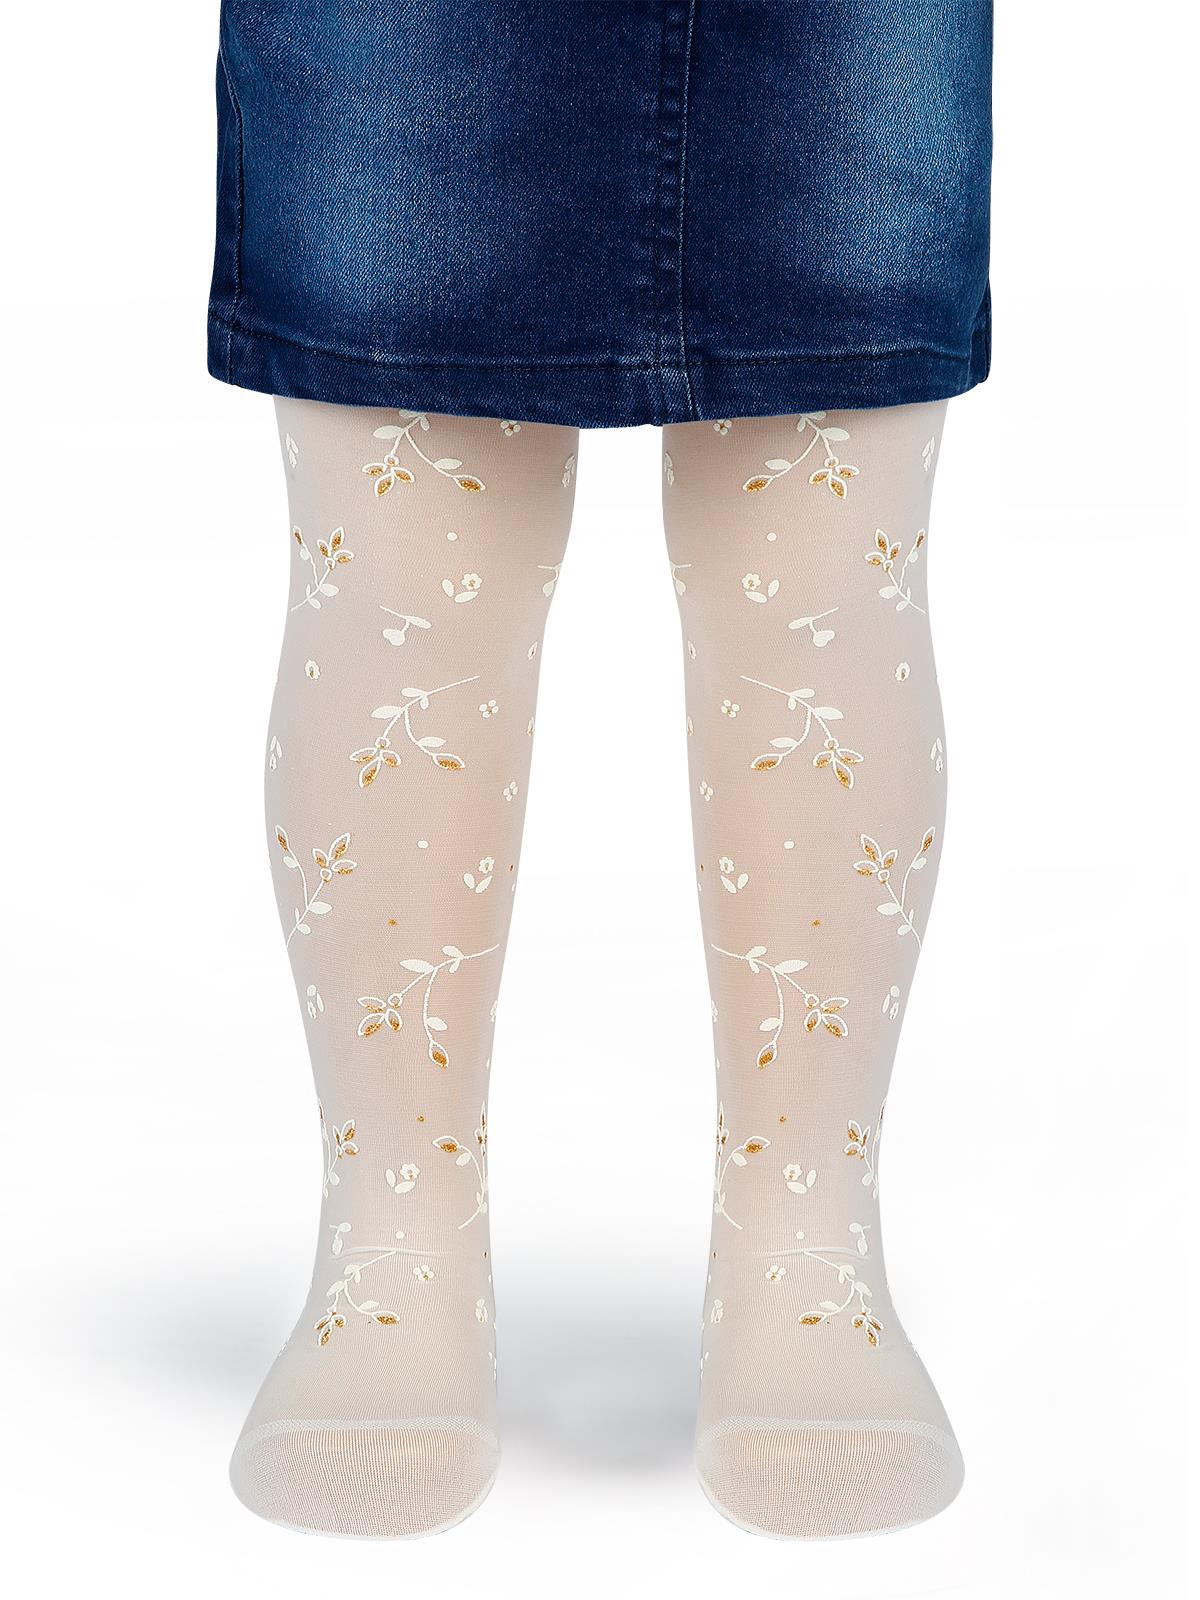 Bella Calze Kız Çocuk Külotlu Çorap 2-11 Yaş Ekru